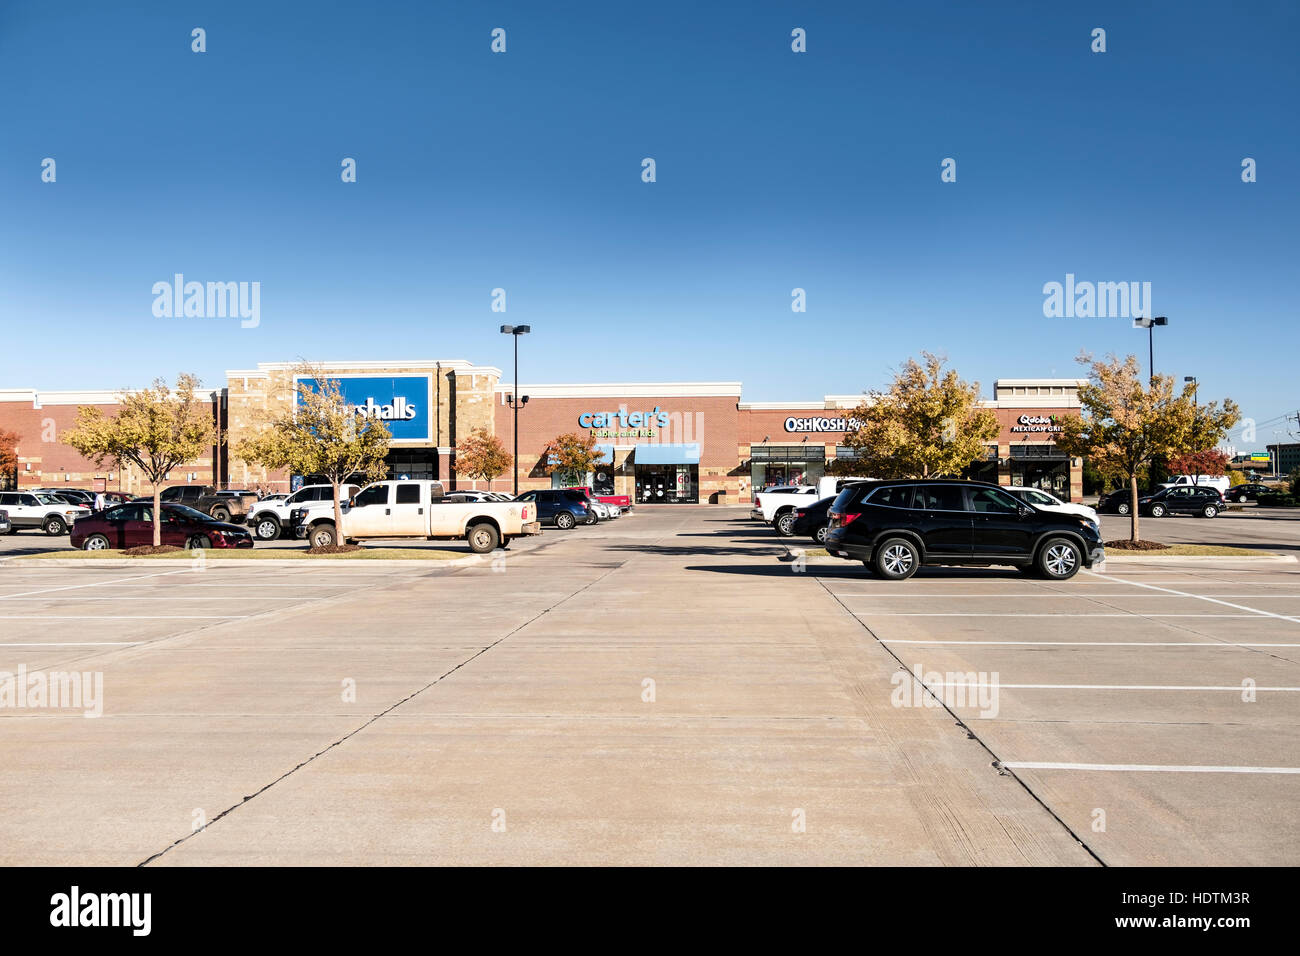 Un centre commercial et un terrain de stationnement, montrant Marshalls, Carter's, OshKosh B'gosh et Qdoba entreprises. Oklahoma City, Oklahoma, USA. Banque D'Images